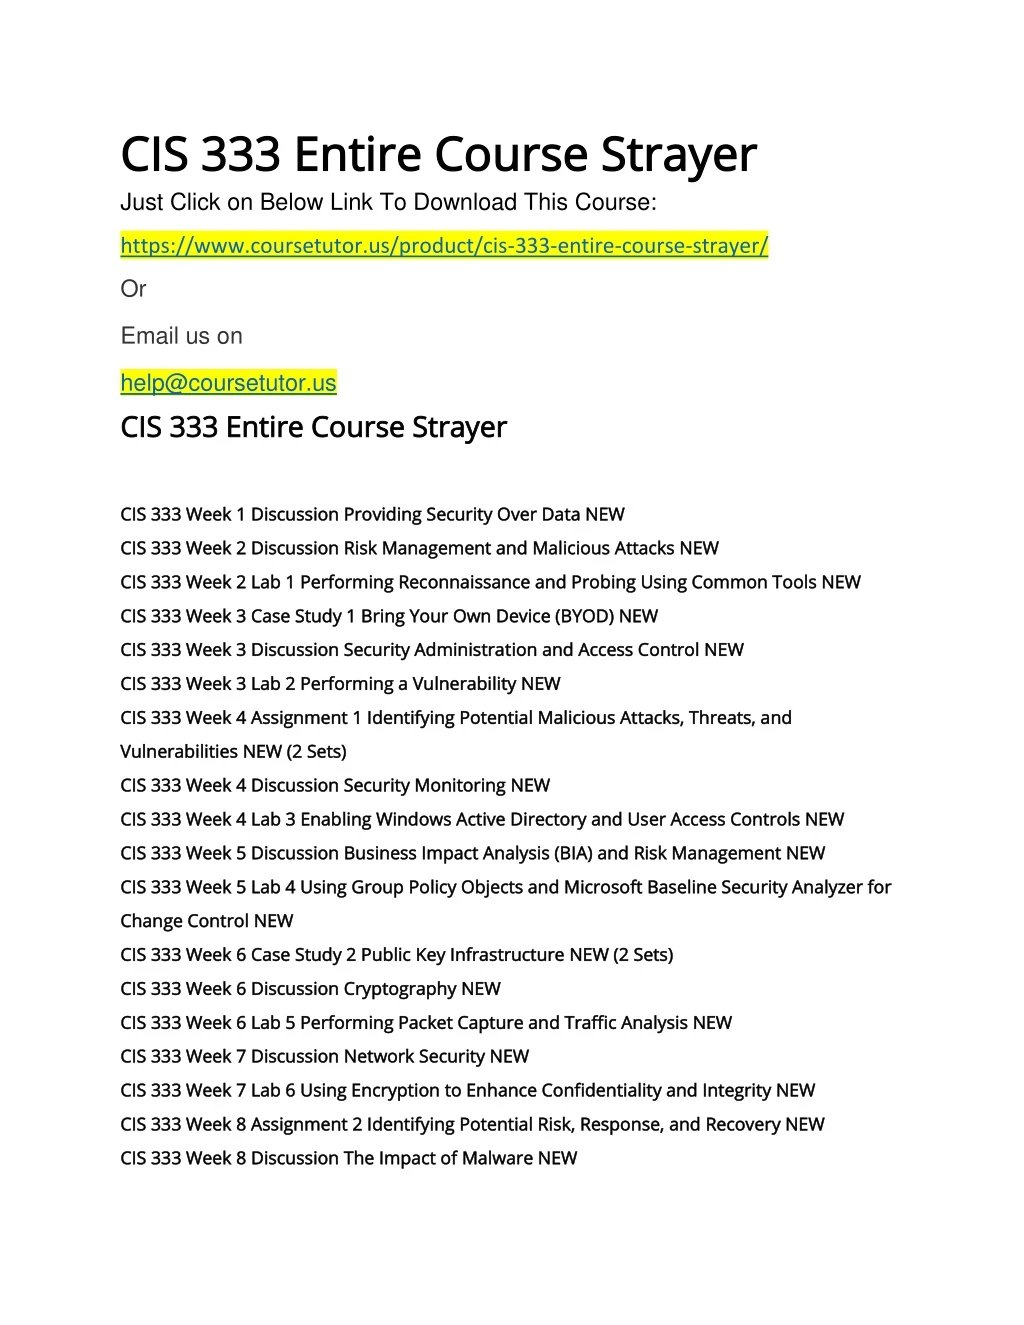 cis 333 entire course strayer cis 333 entire